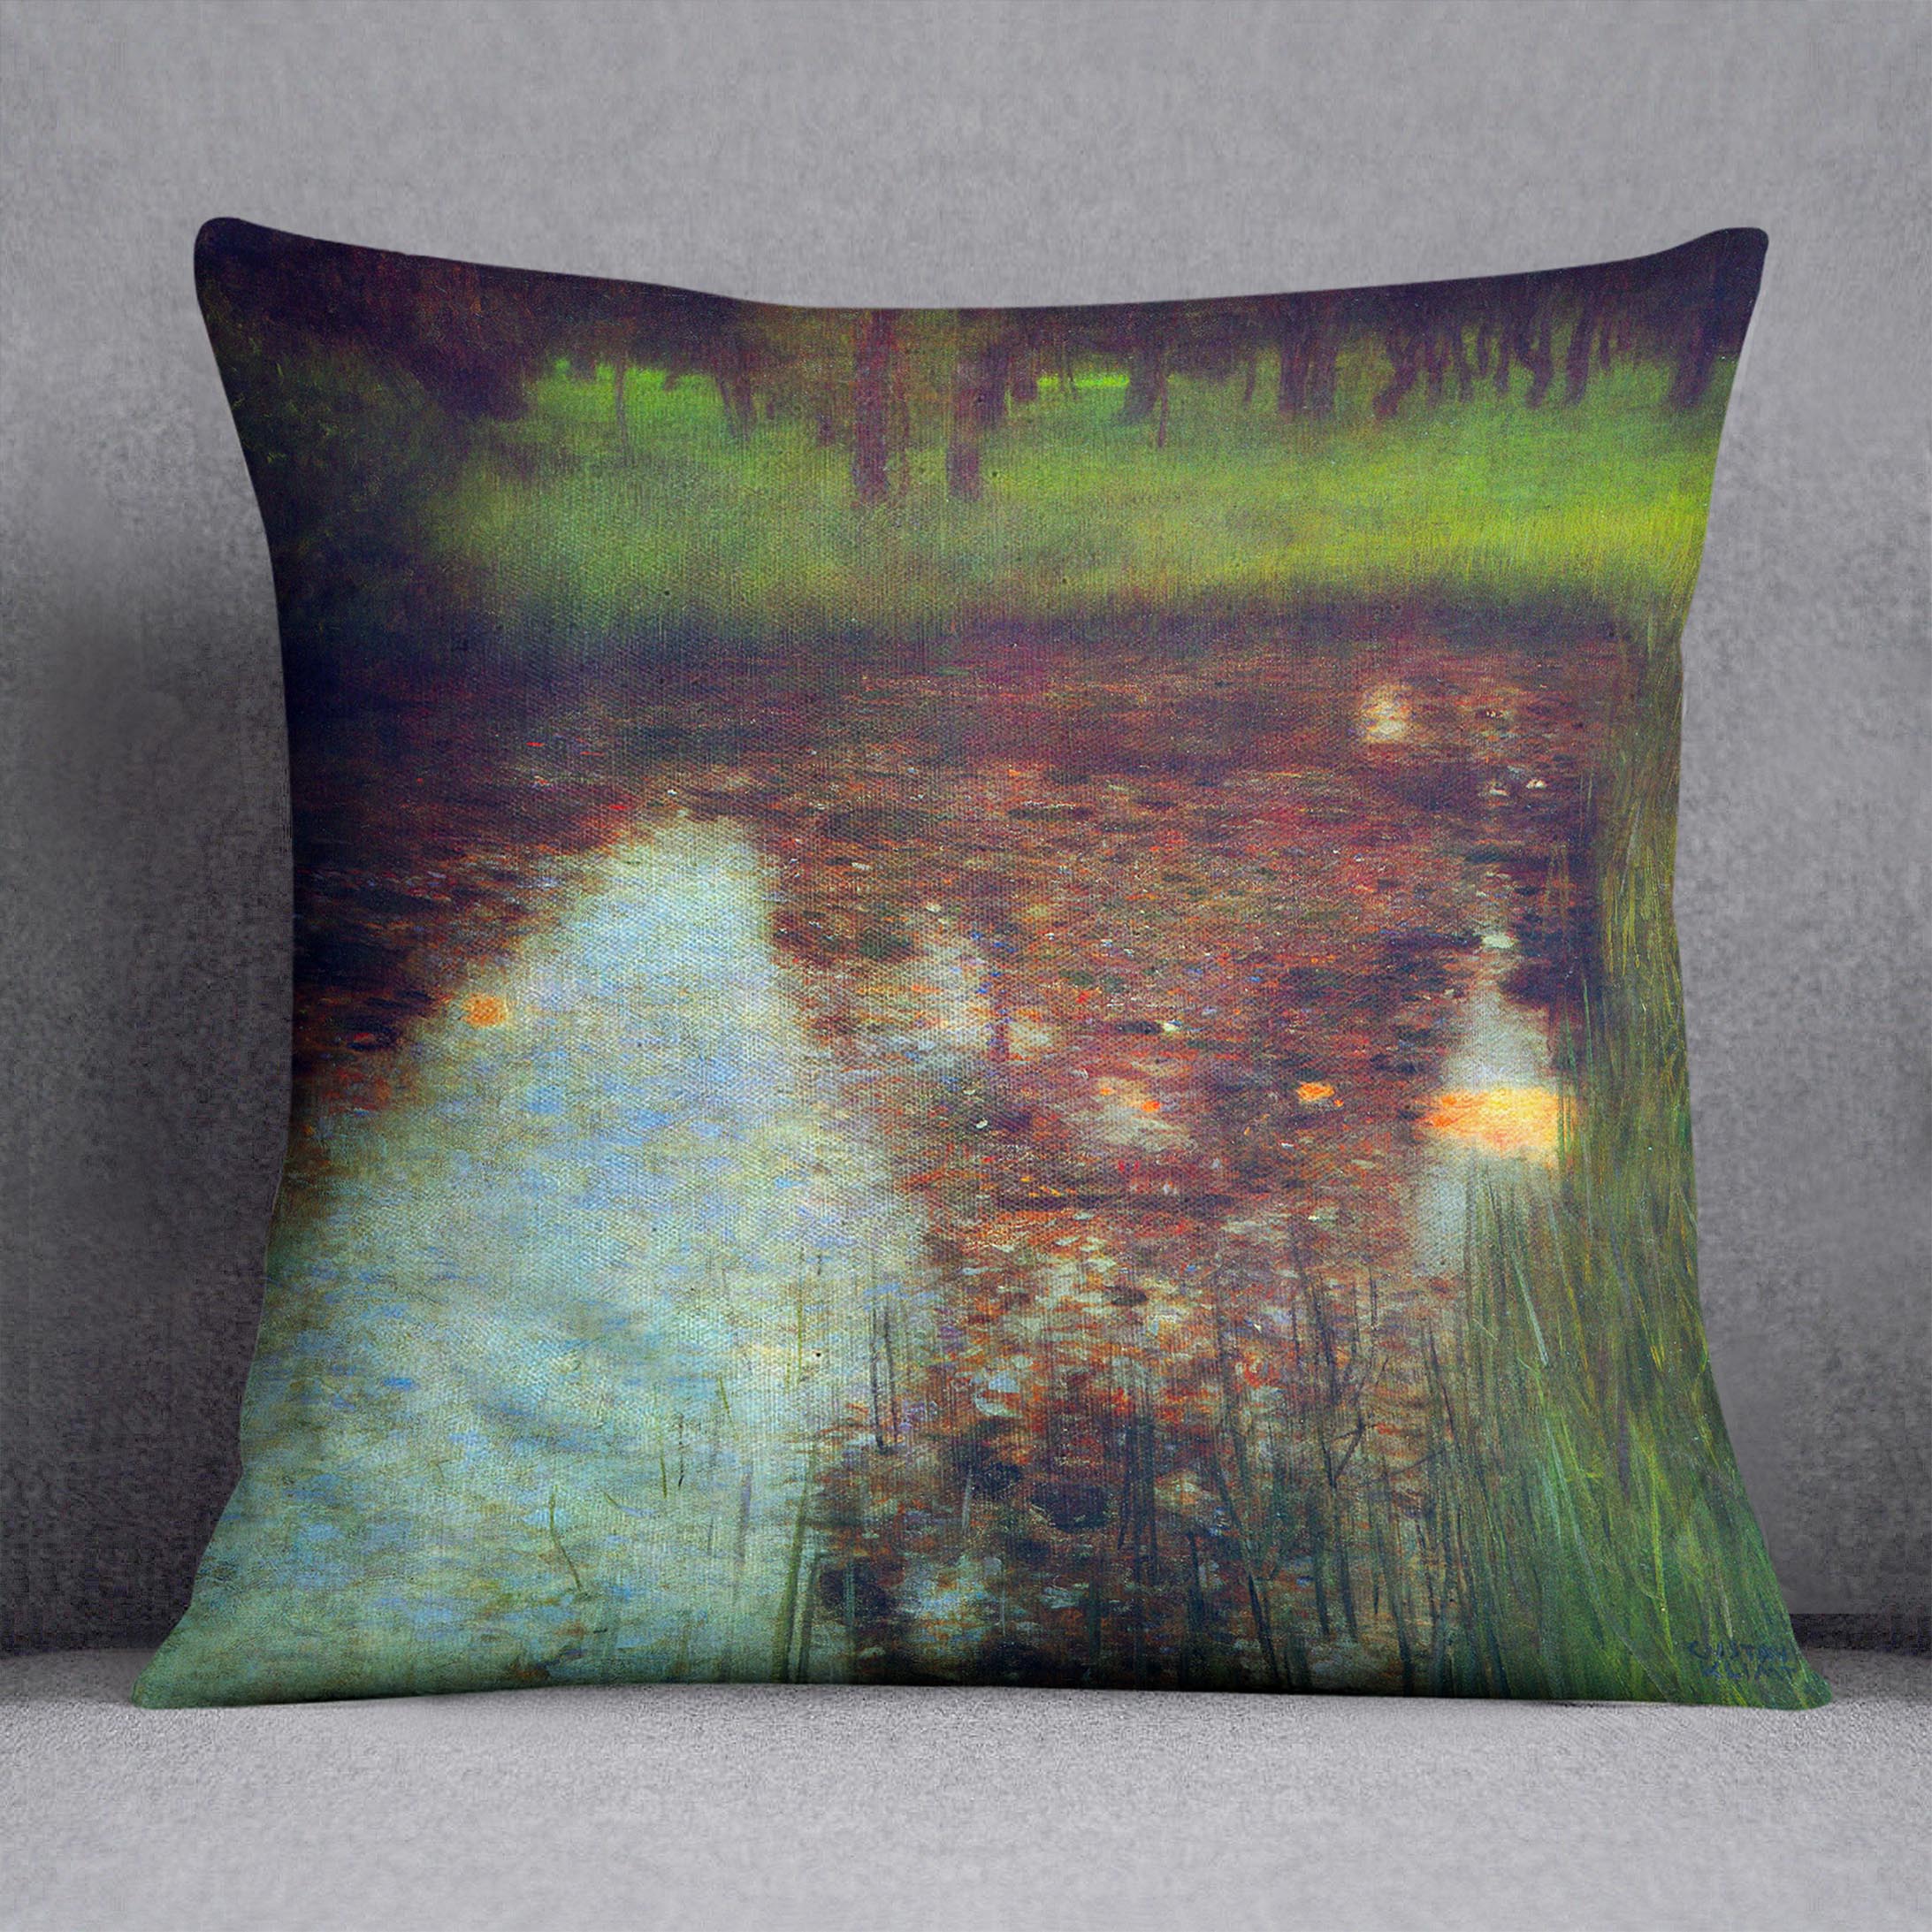 The Marsh by Klimt Cushion